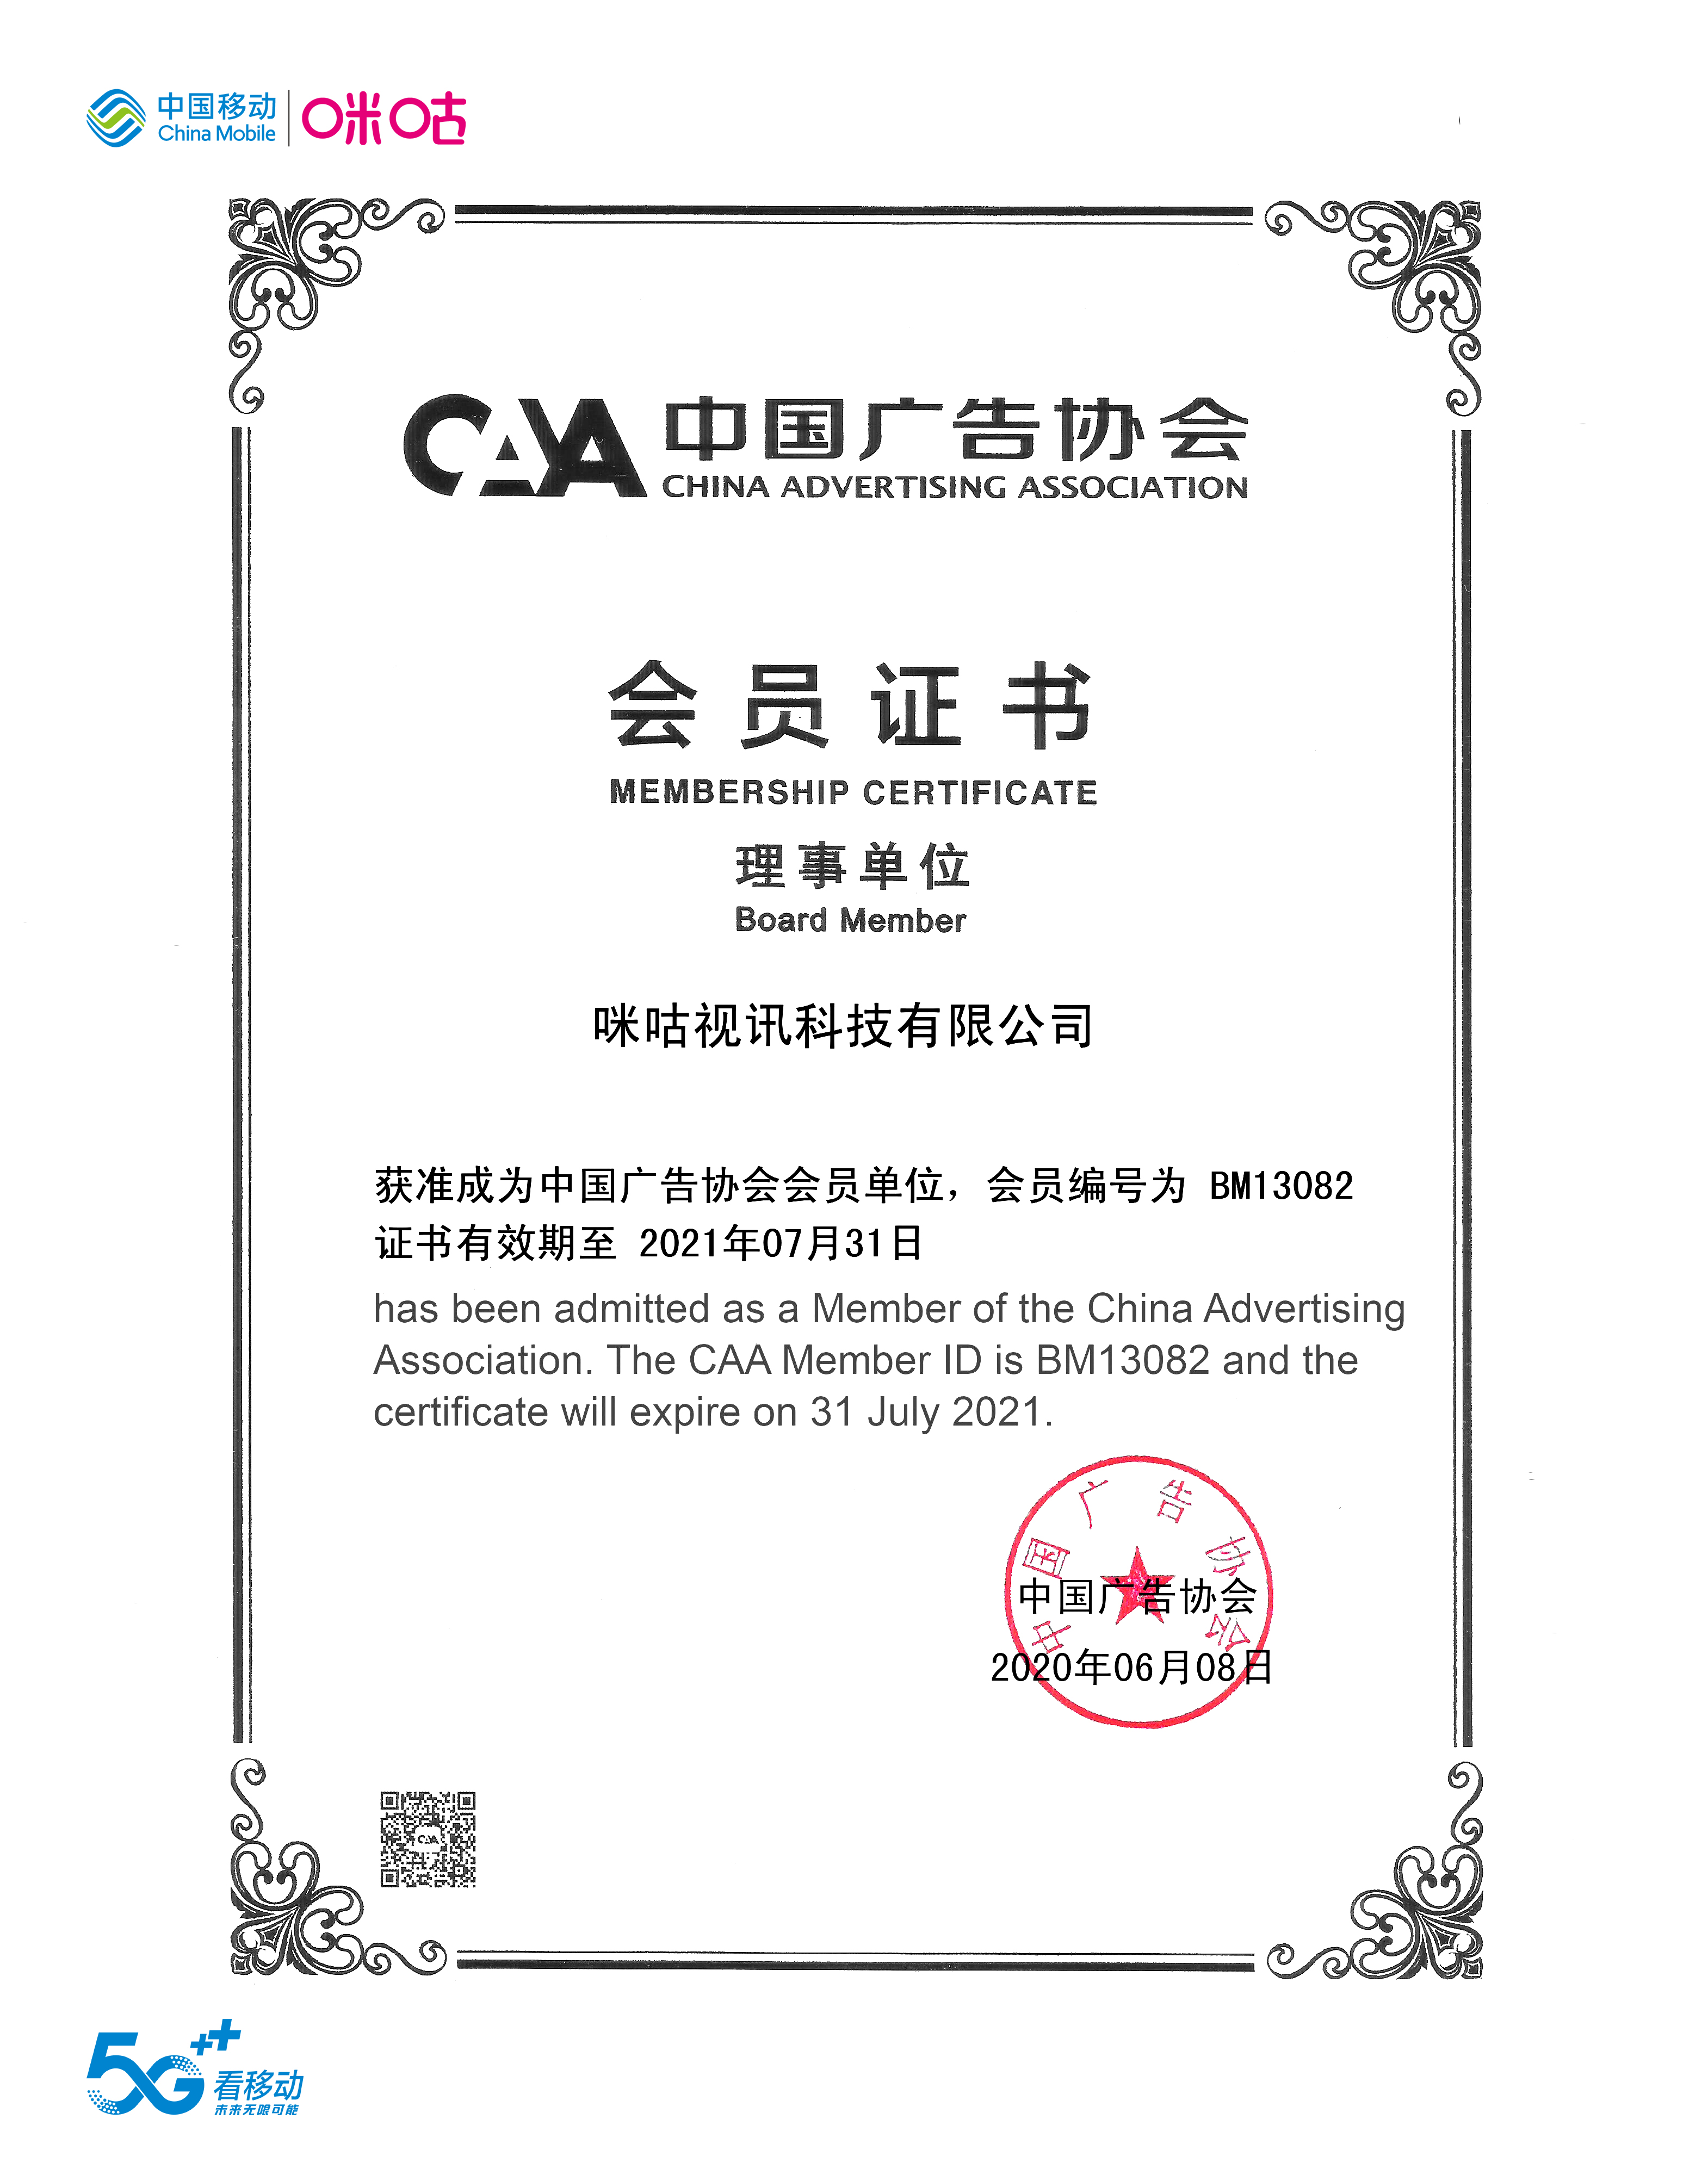 中国移动咪咕公司正式成为中国广告协会理事单位